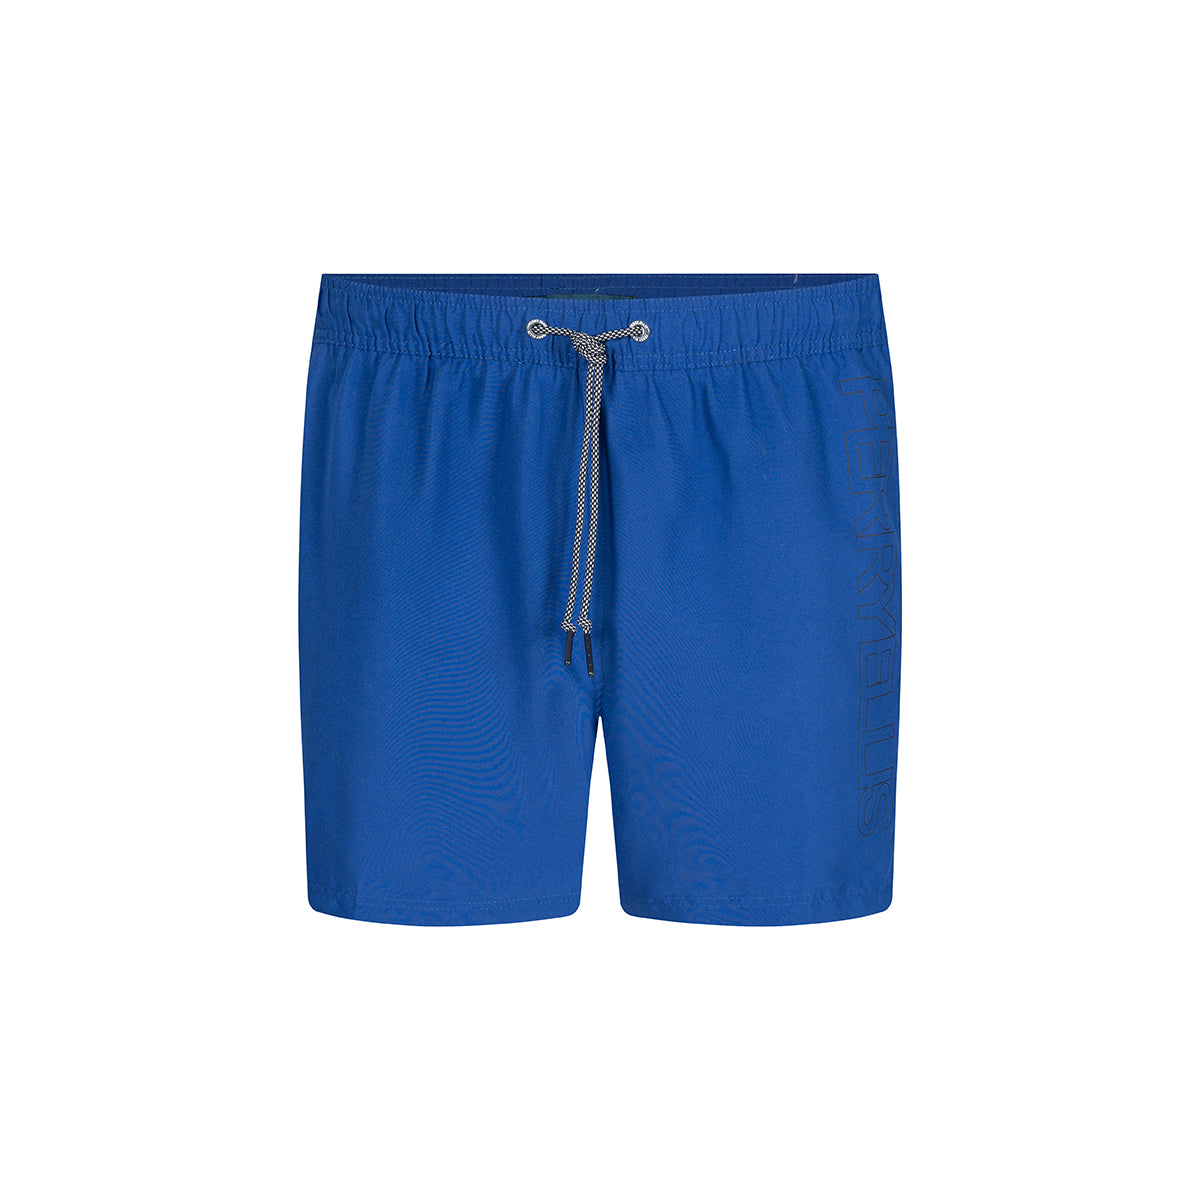 Pantaloneta de baño color azul de Perry Ellis BE00080012